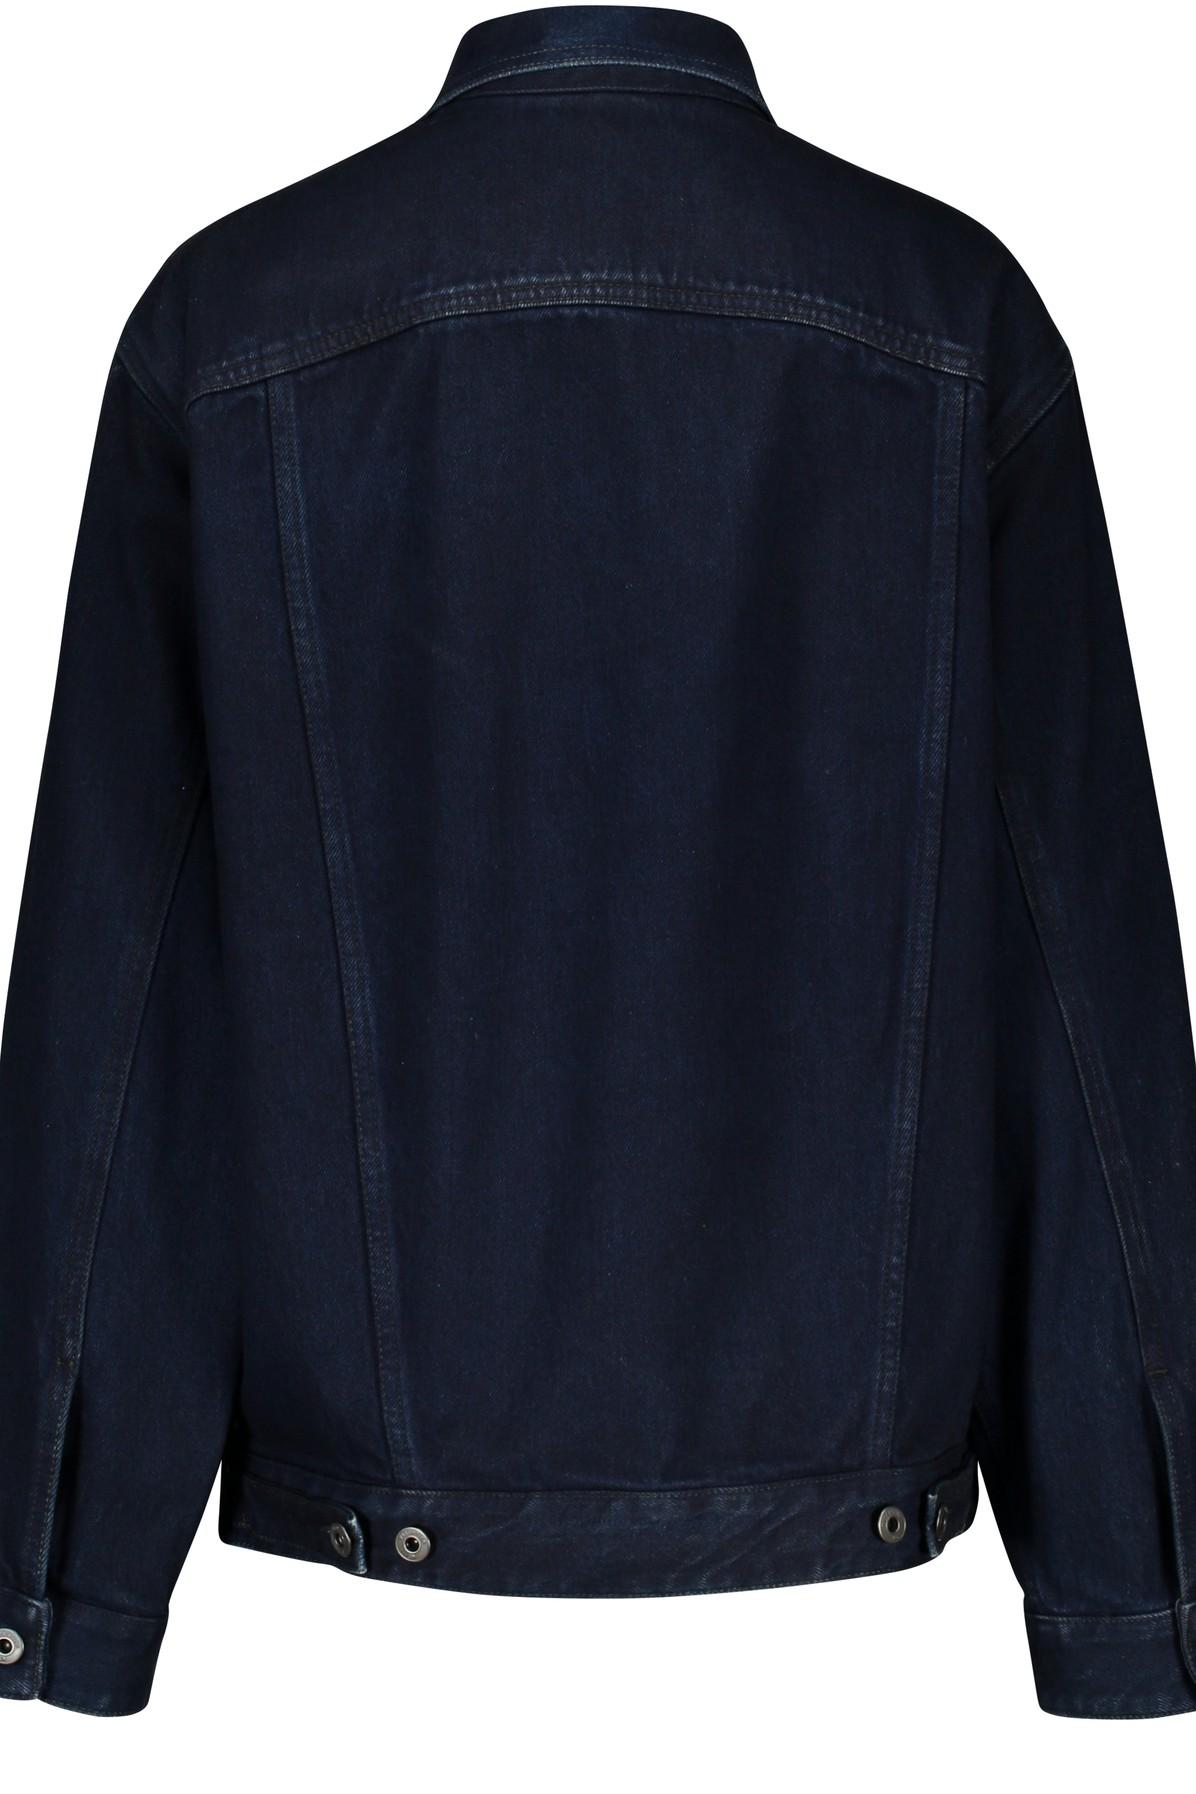 Valentino Denim Jacket in Denim-Blue (Blue) - Save 57% - Lyst